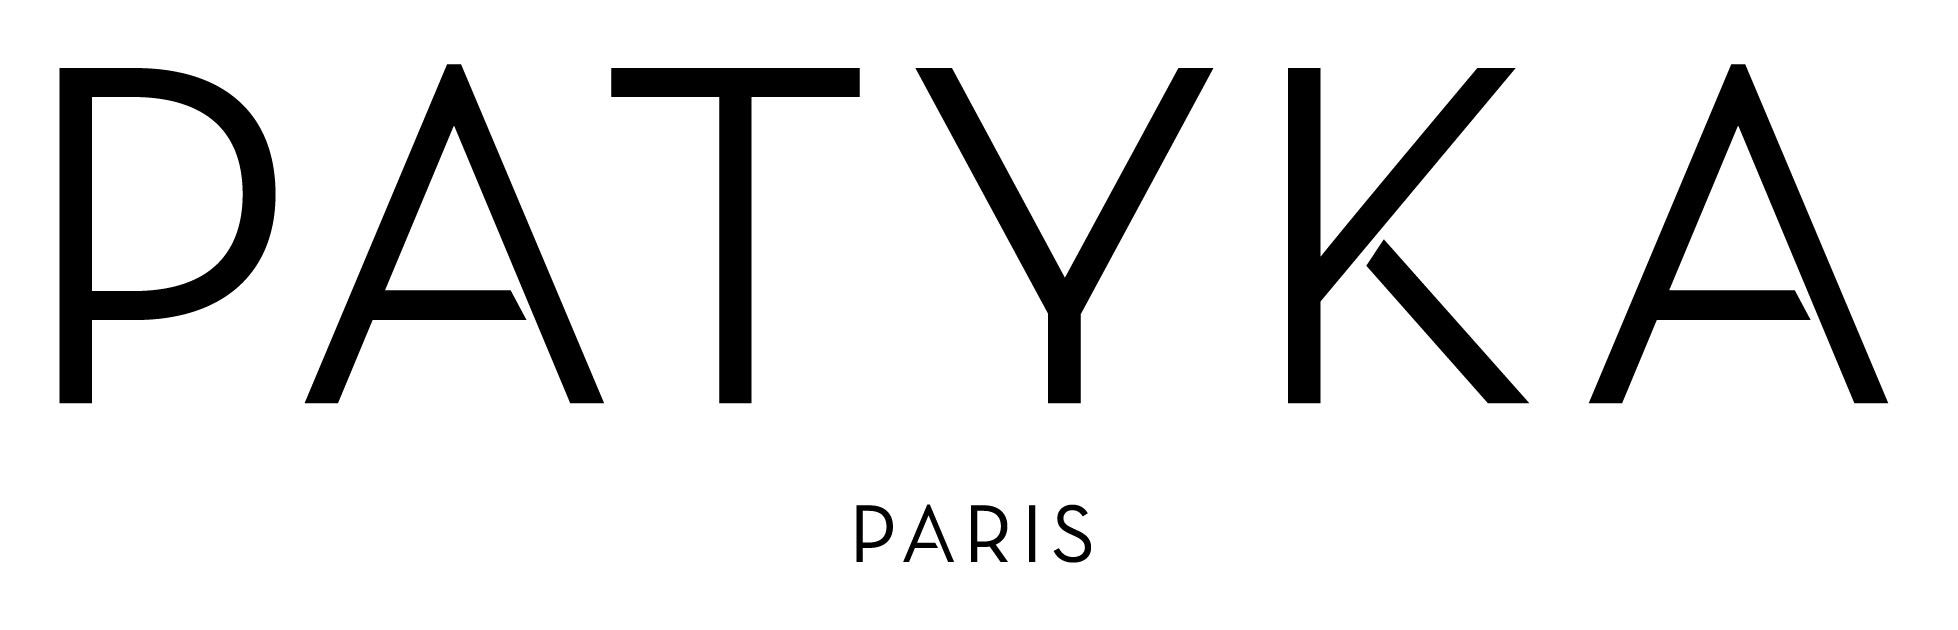 Косметика бренда PATYKA, логотип